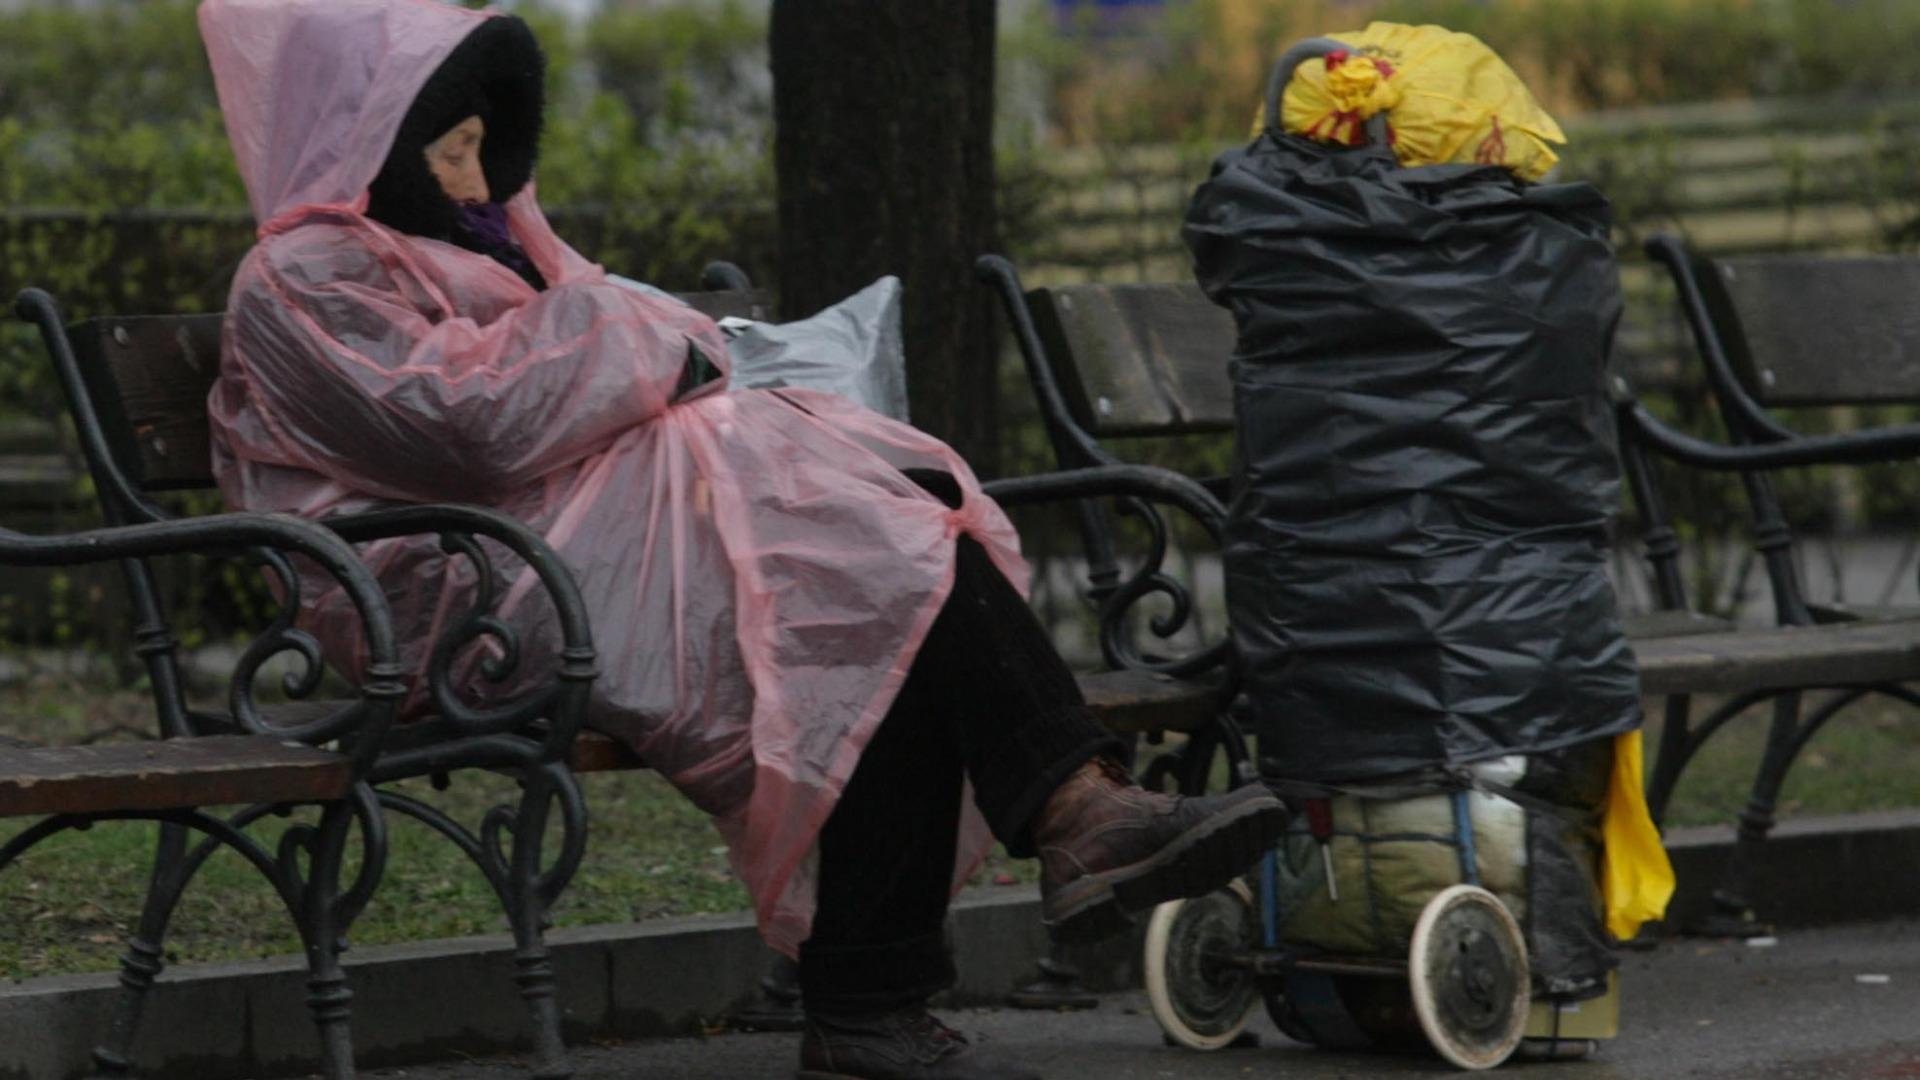 Първият общински приют за бездомни хора във Великотърновска област е